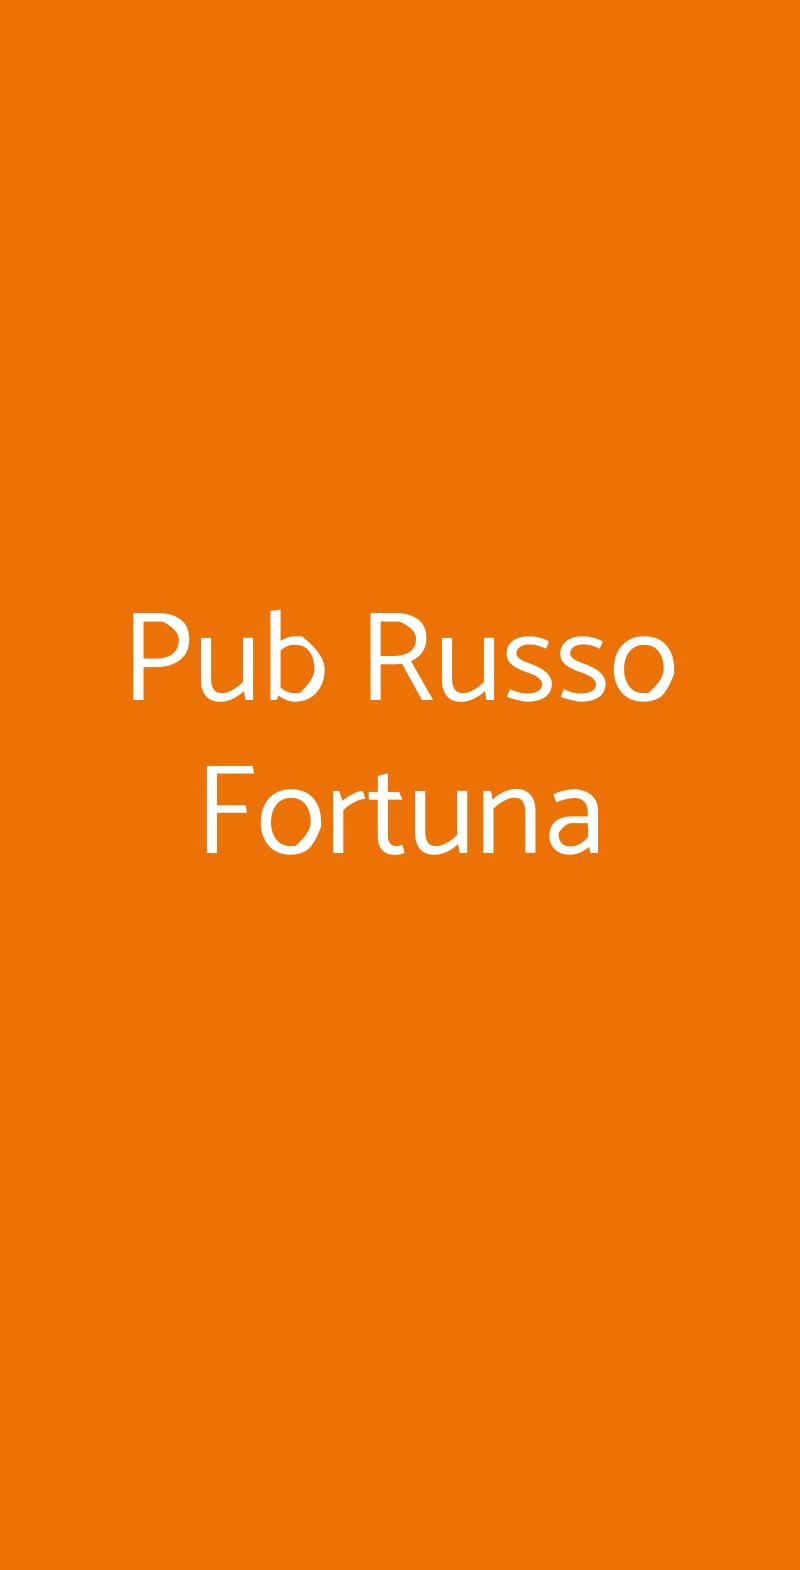 Pub Russo Fortuna Roma menù 1 pagina